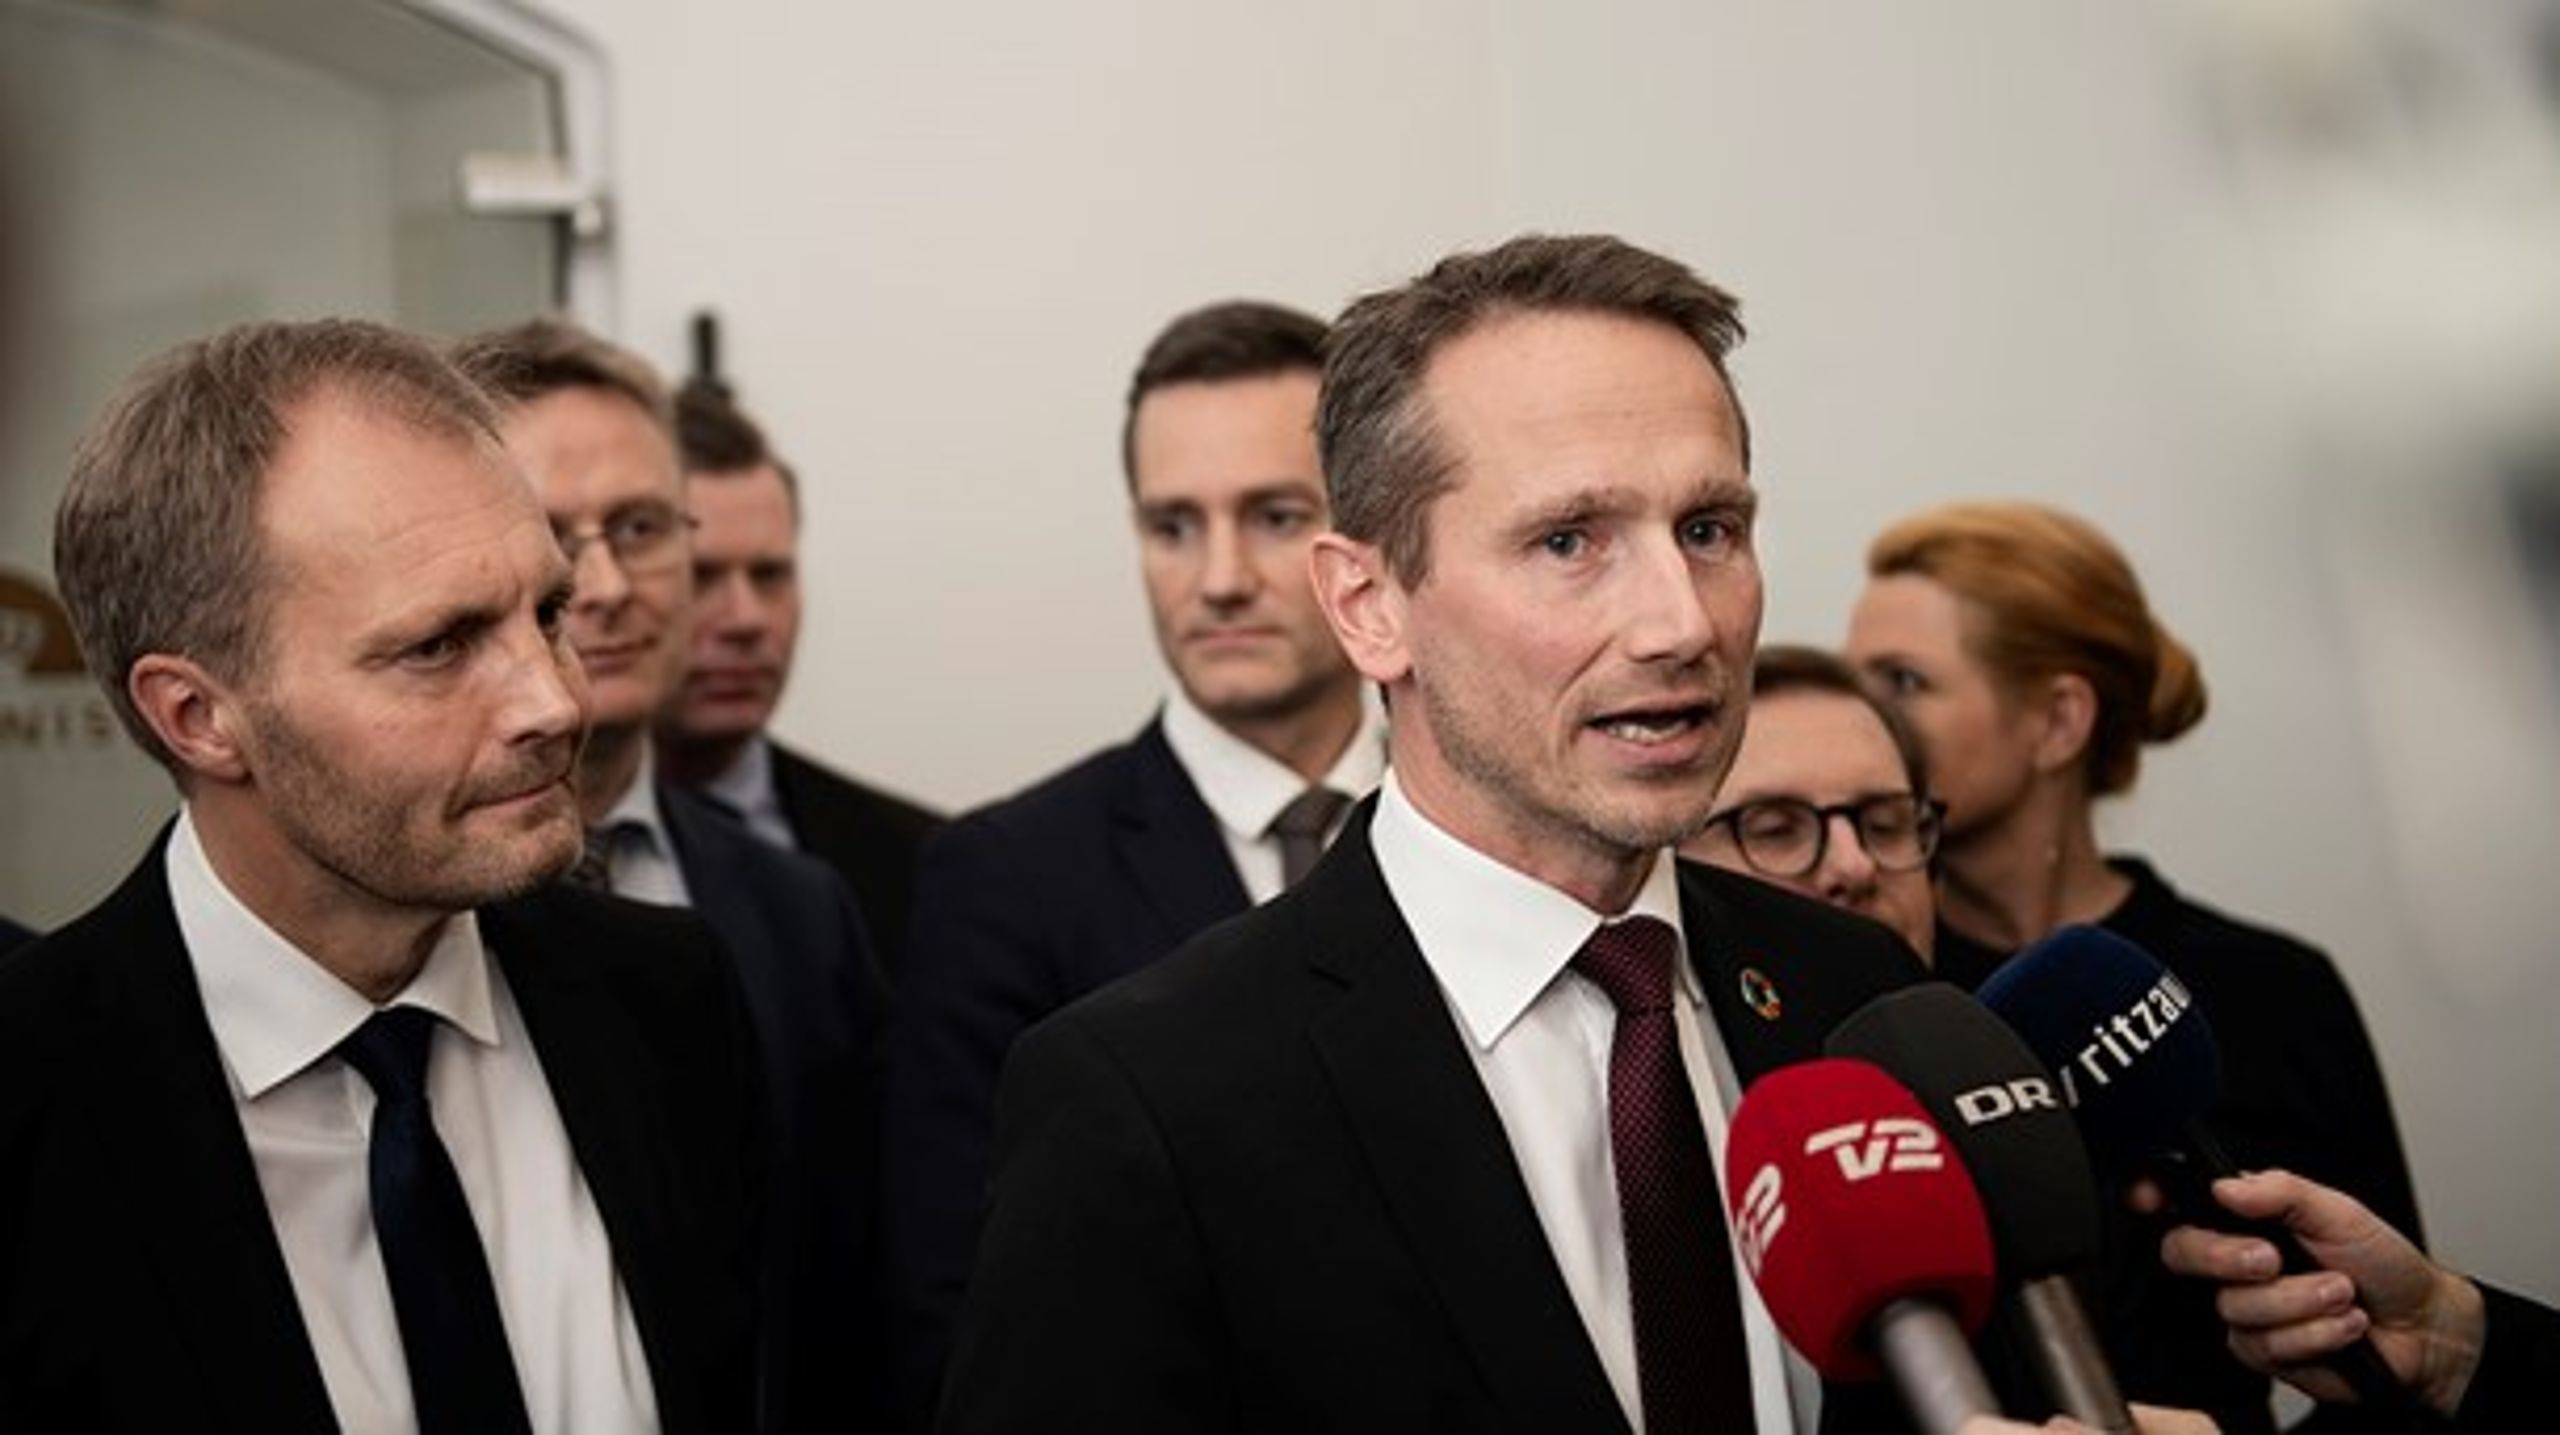 Regeringen og Dansk Folkeparti er blevet enige om en finanslovsaftale. Nu er der kun få afsluttende skridt tilbage, før finansloven for 2019 er på plads.